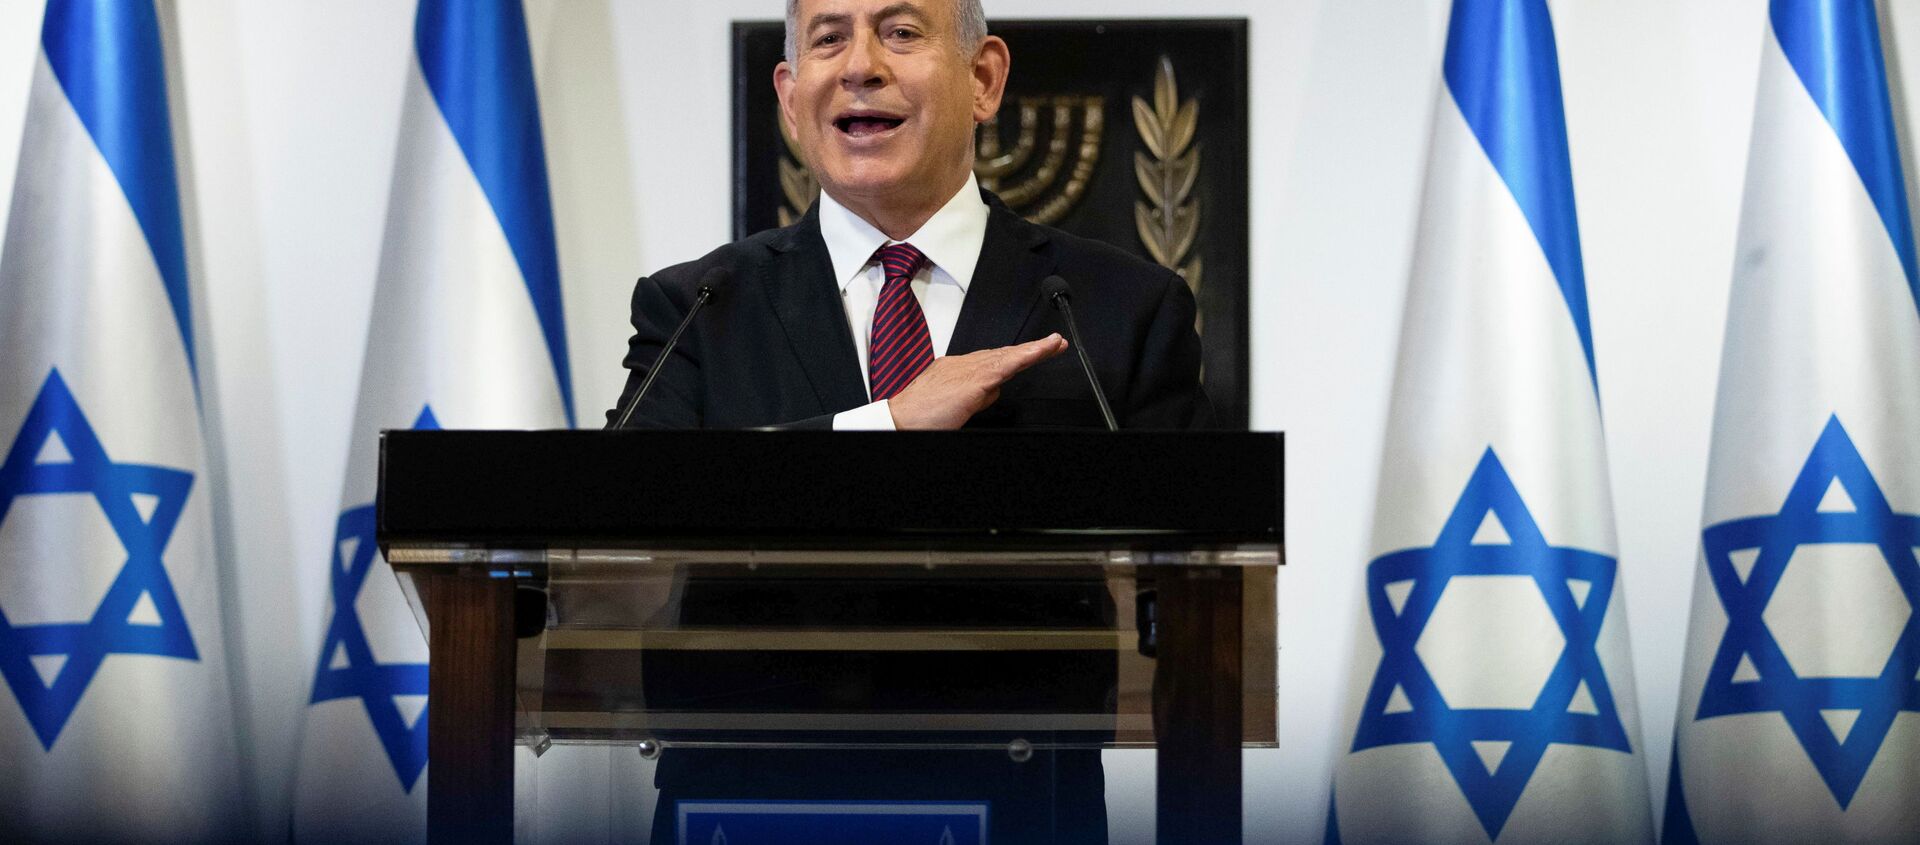 Israeli Prime Minister Benjamin Netanyahu delivers a statement at the Knesset (Israel's parliament) in Jerusalem, December 22, 2020. - Sputnik International, 1920, 24.12.2020